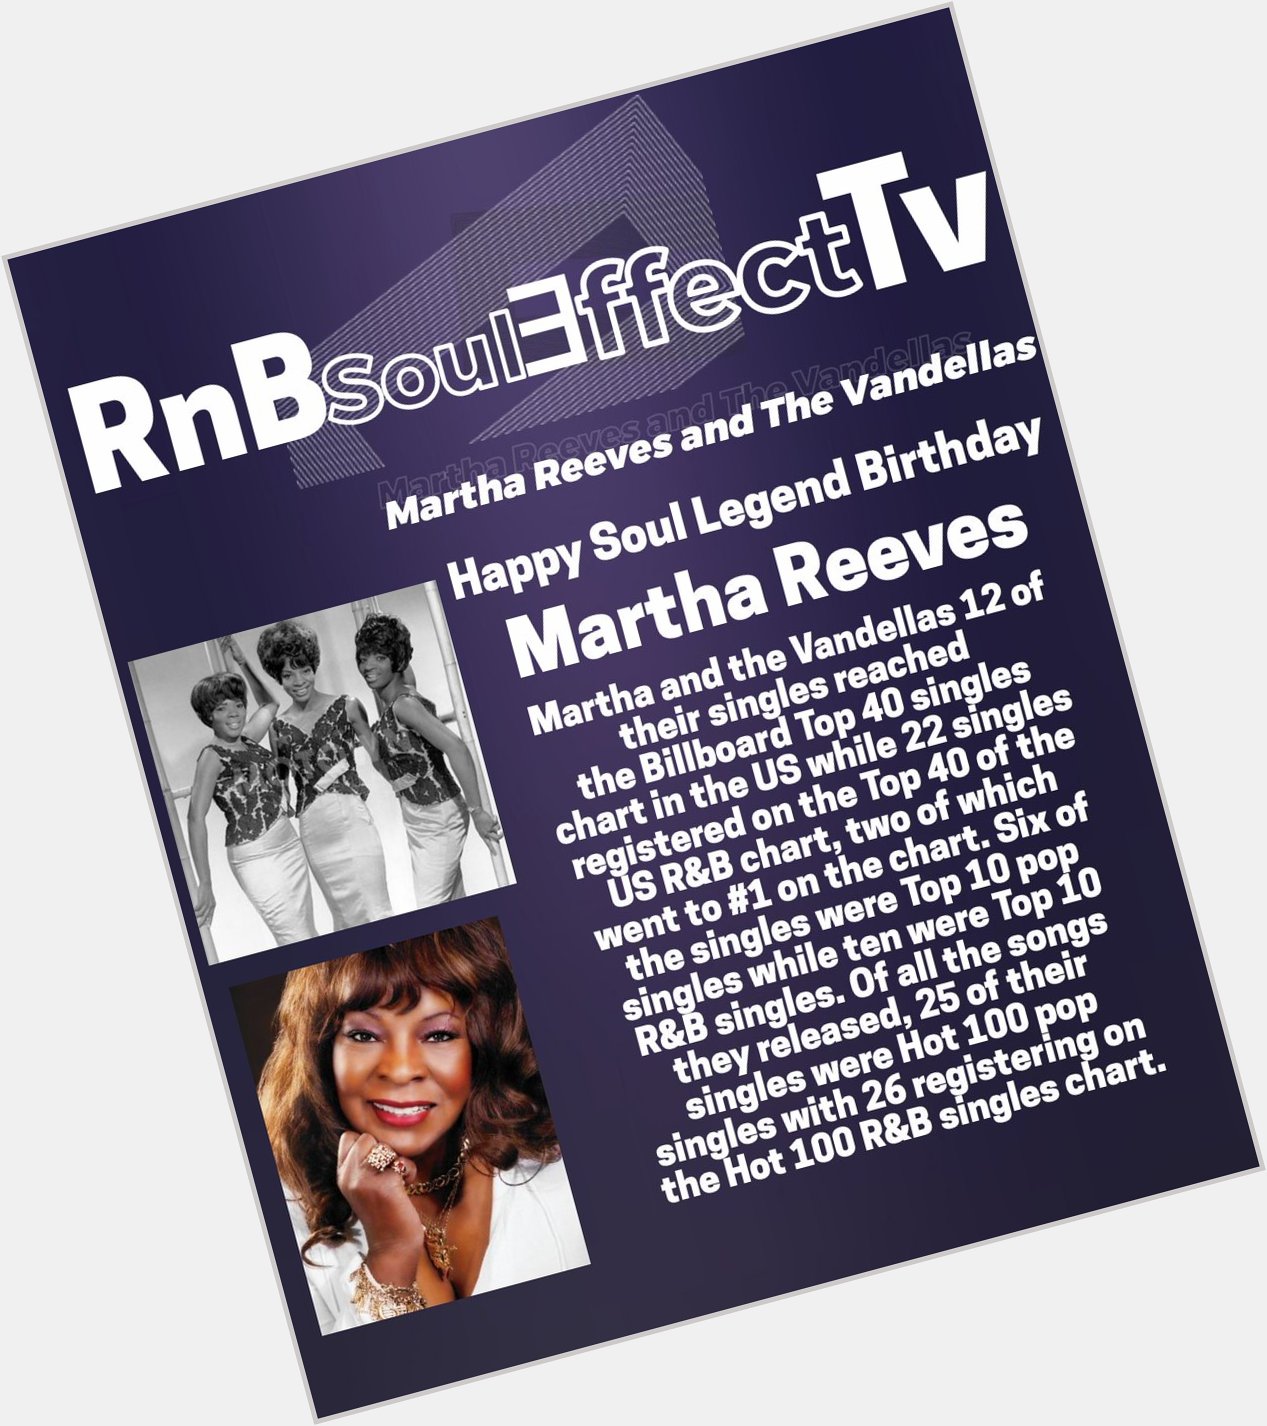 Happy Soul Legend Birthday 
Martha Reeves 